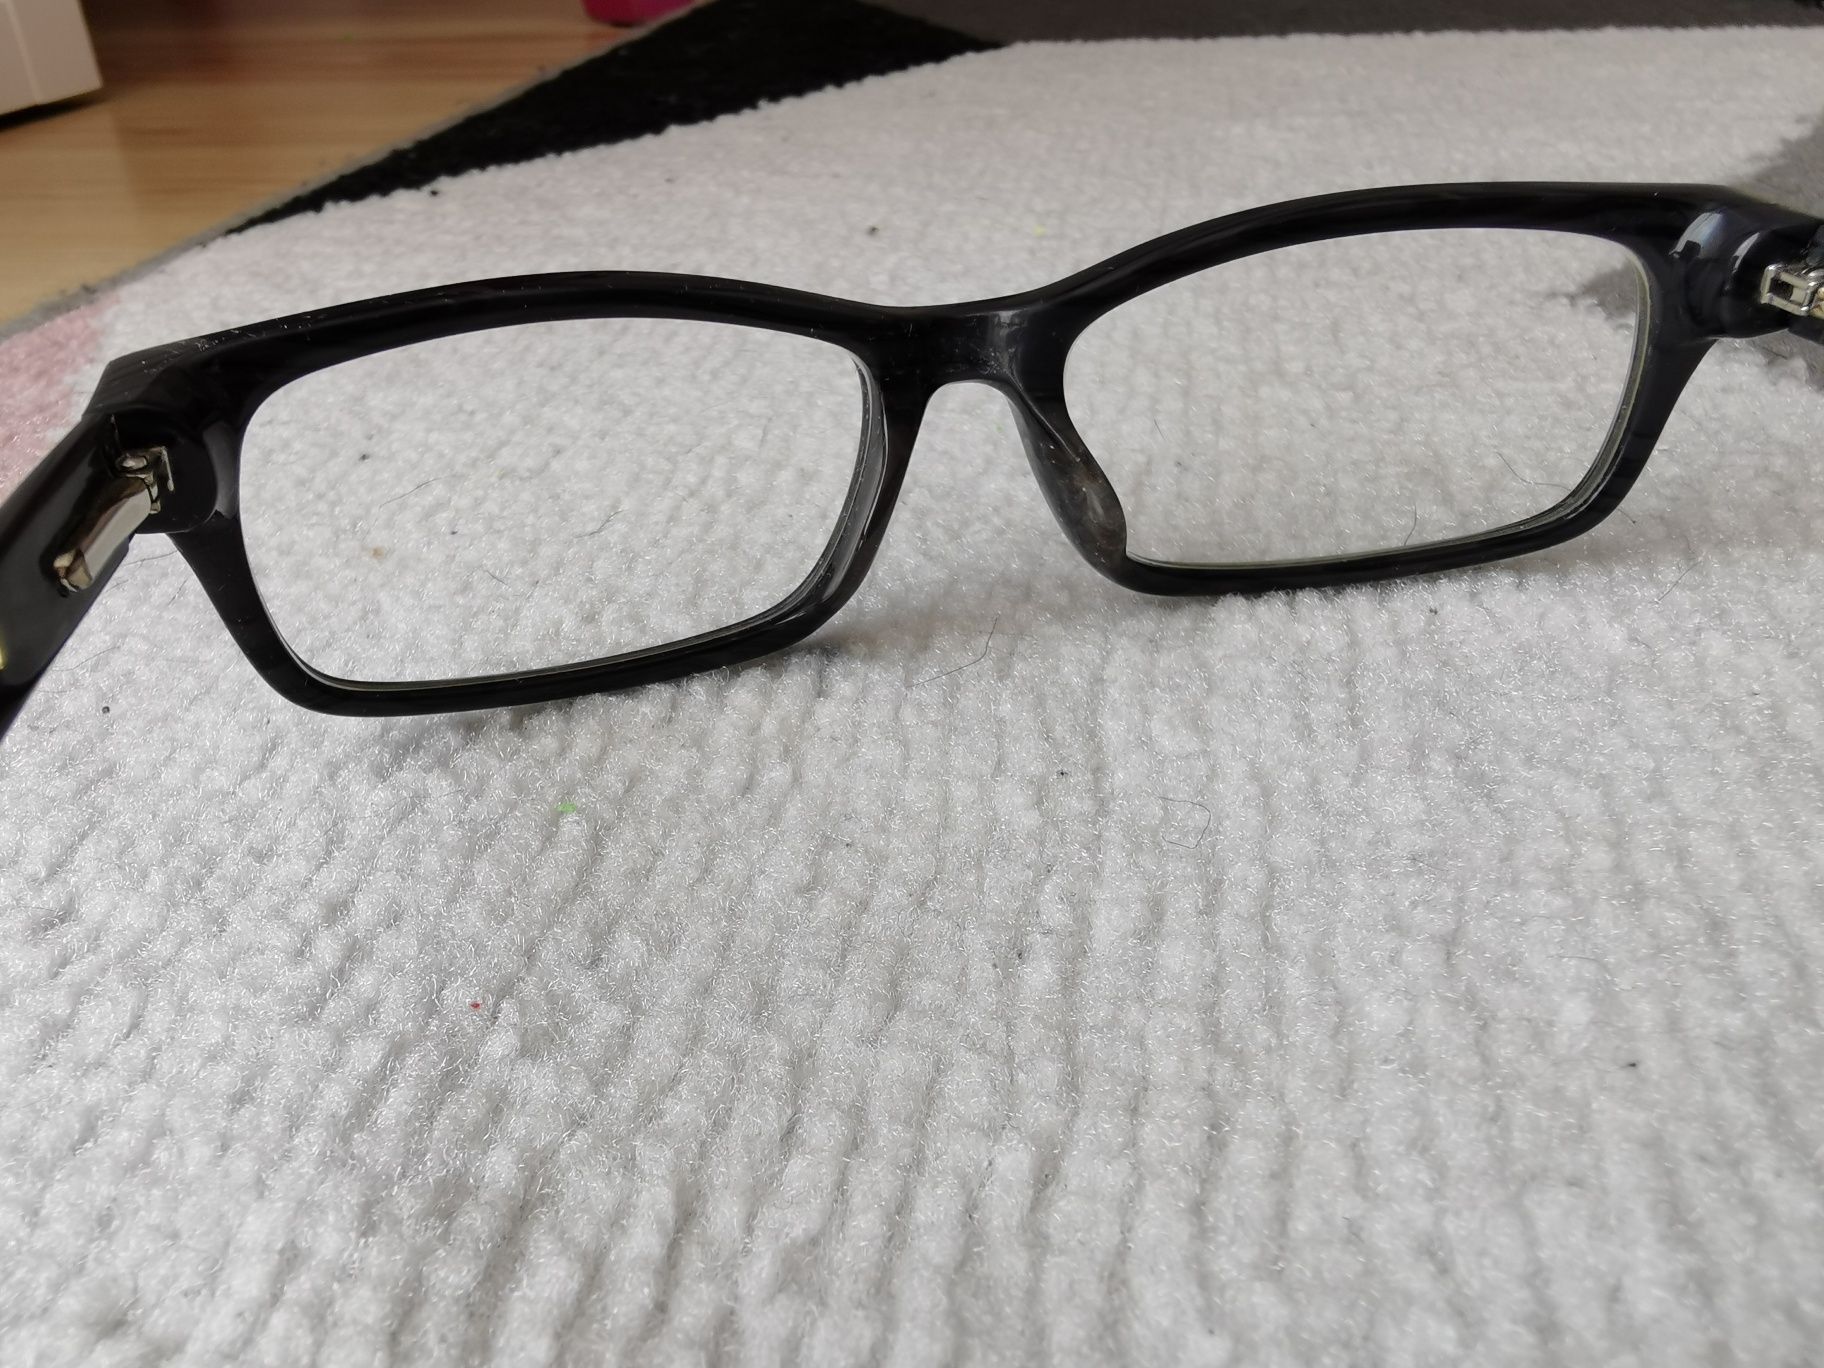 Reis's oprawki okulary